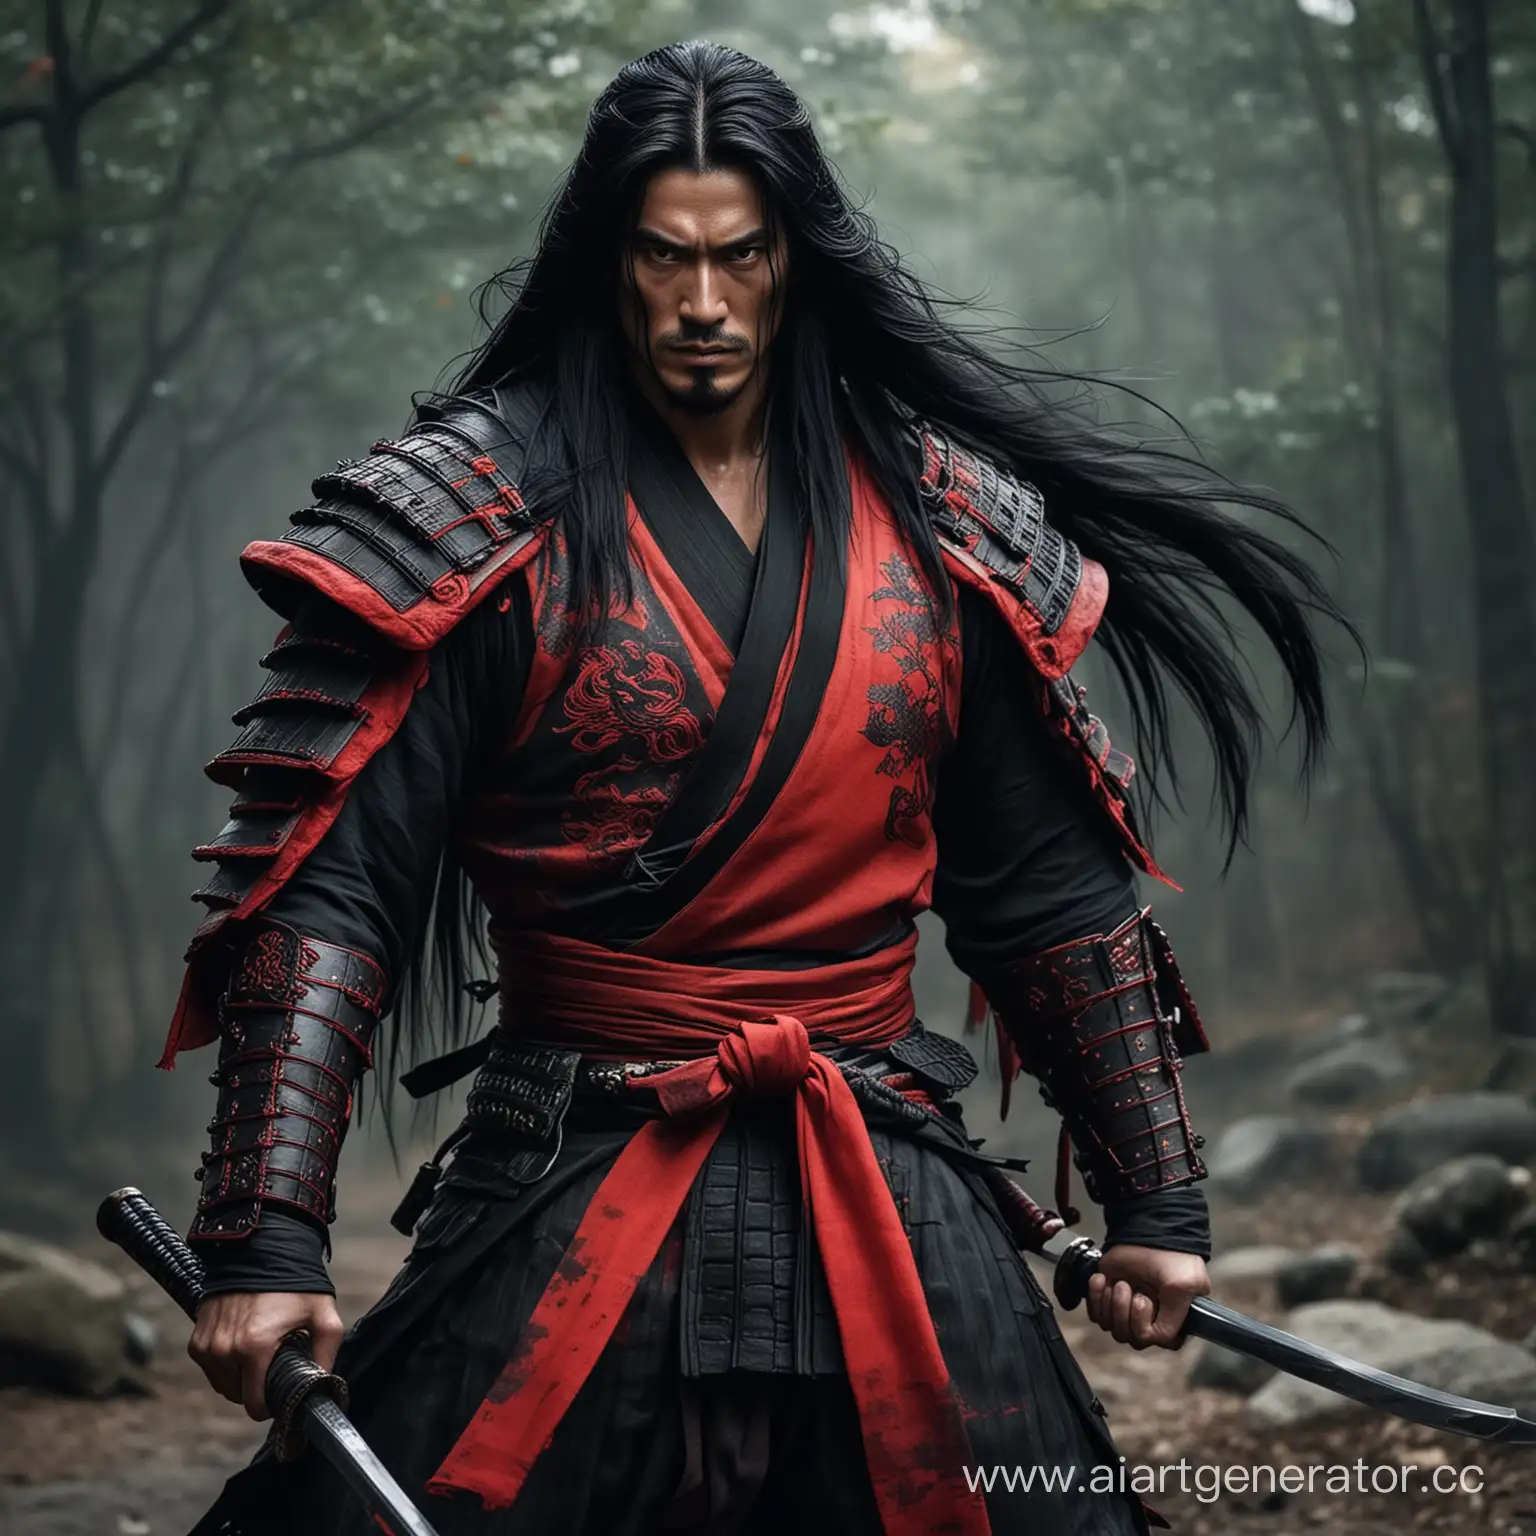 Red-Demon-Samurai-Men-with-Long-Black-Hair-in-Fiery-Battle